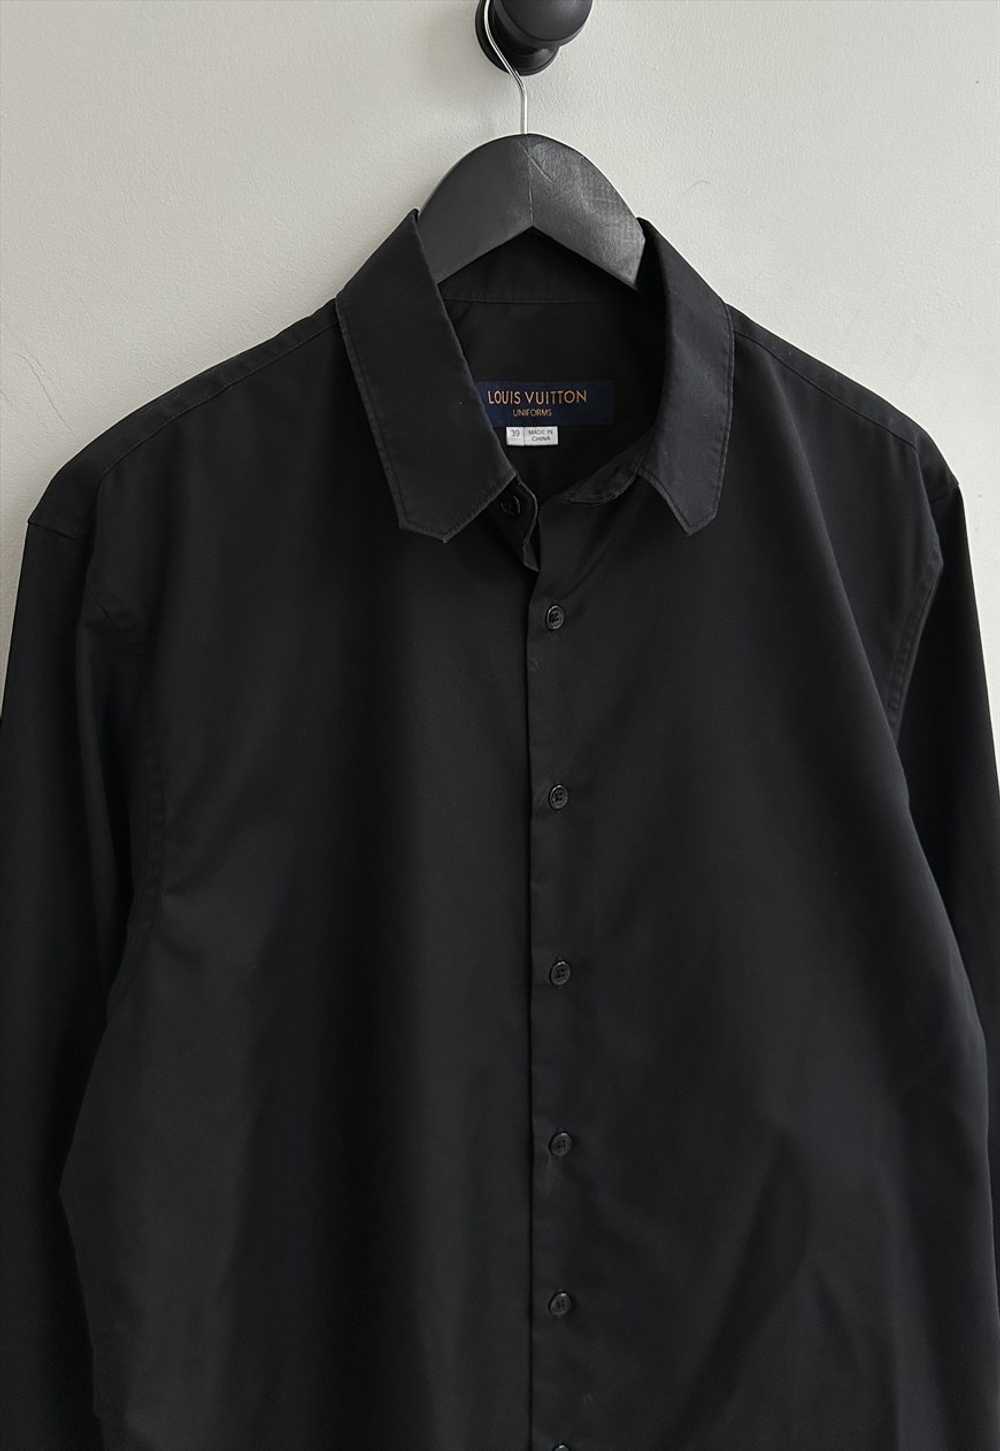 Louis Vuitton Uniforms Black Shirt - image 2